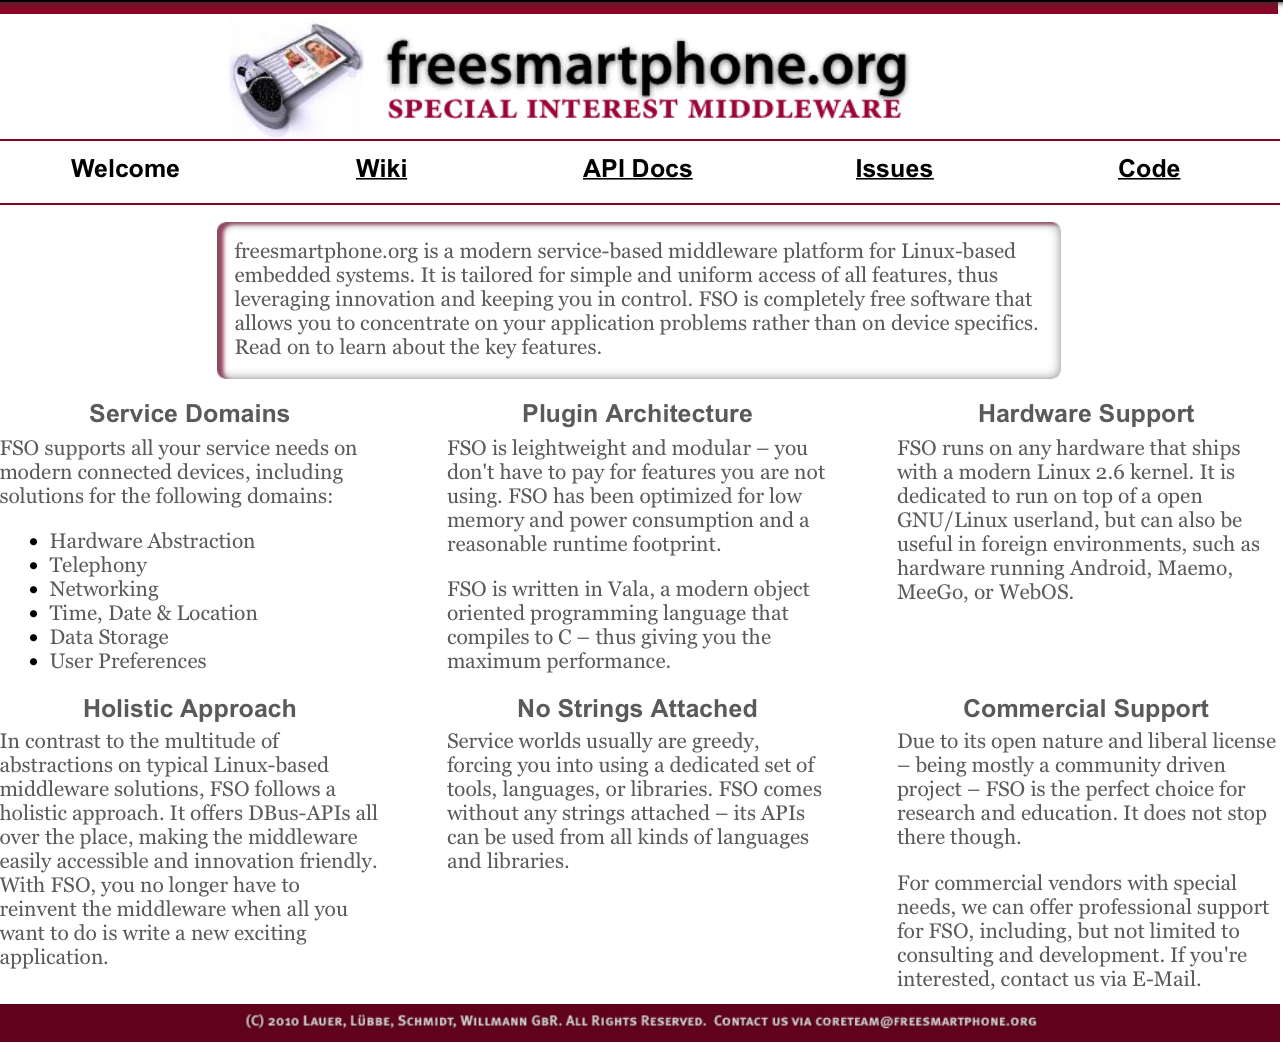 freesmartphone.org